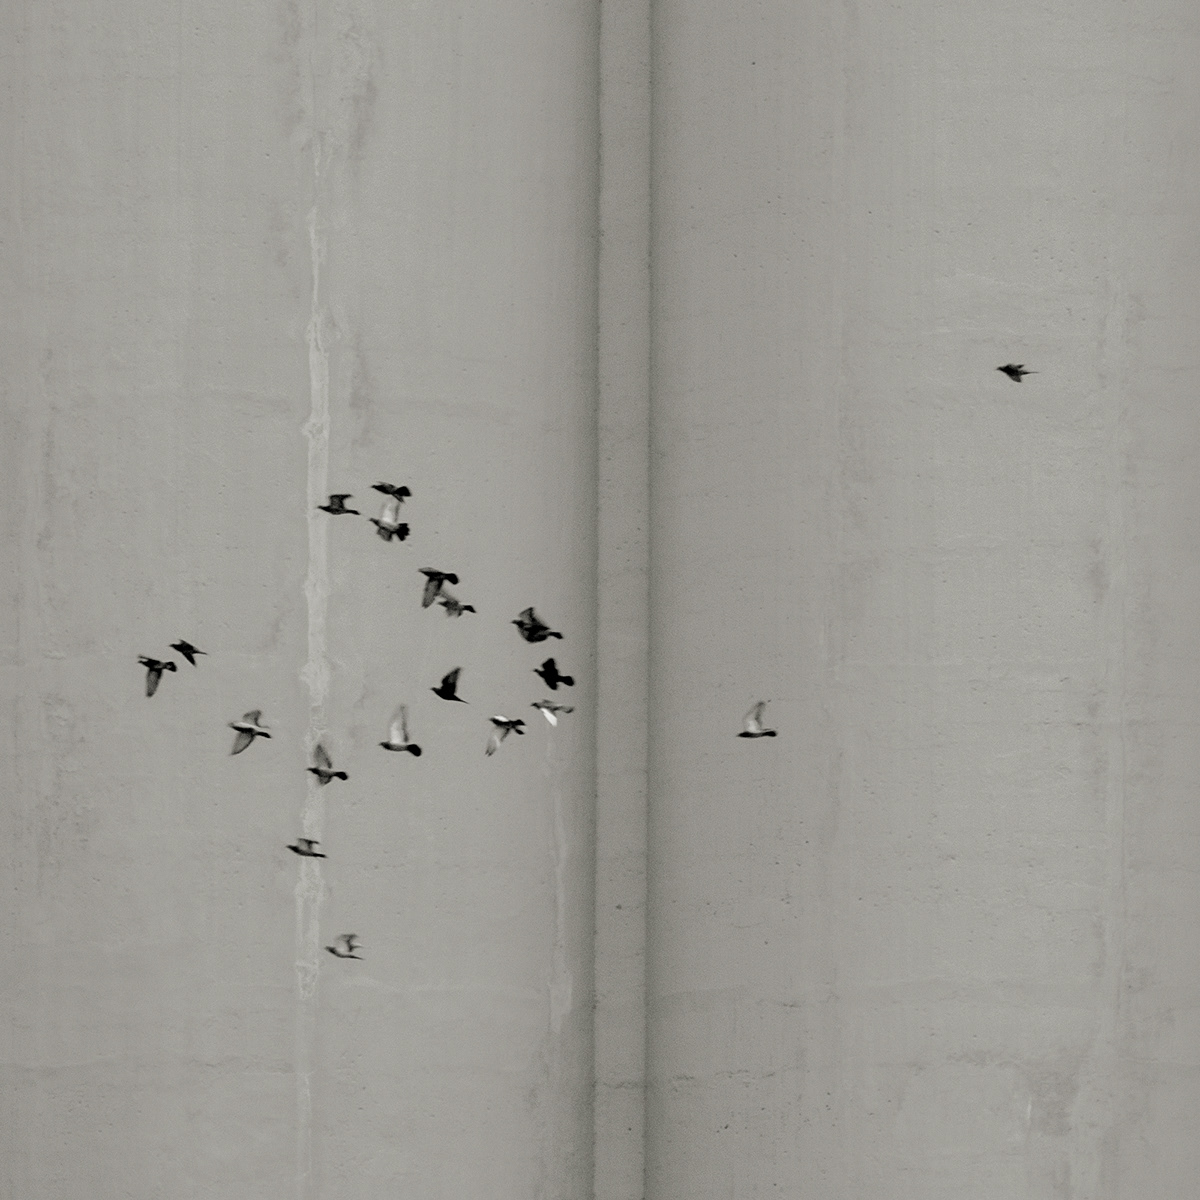 birds concrete oiseaux pigeons black and white noir et blanc carré square 6x6